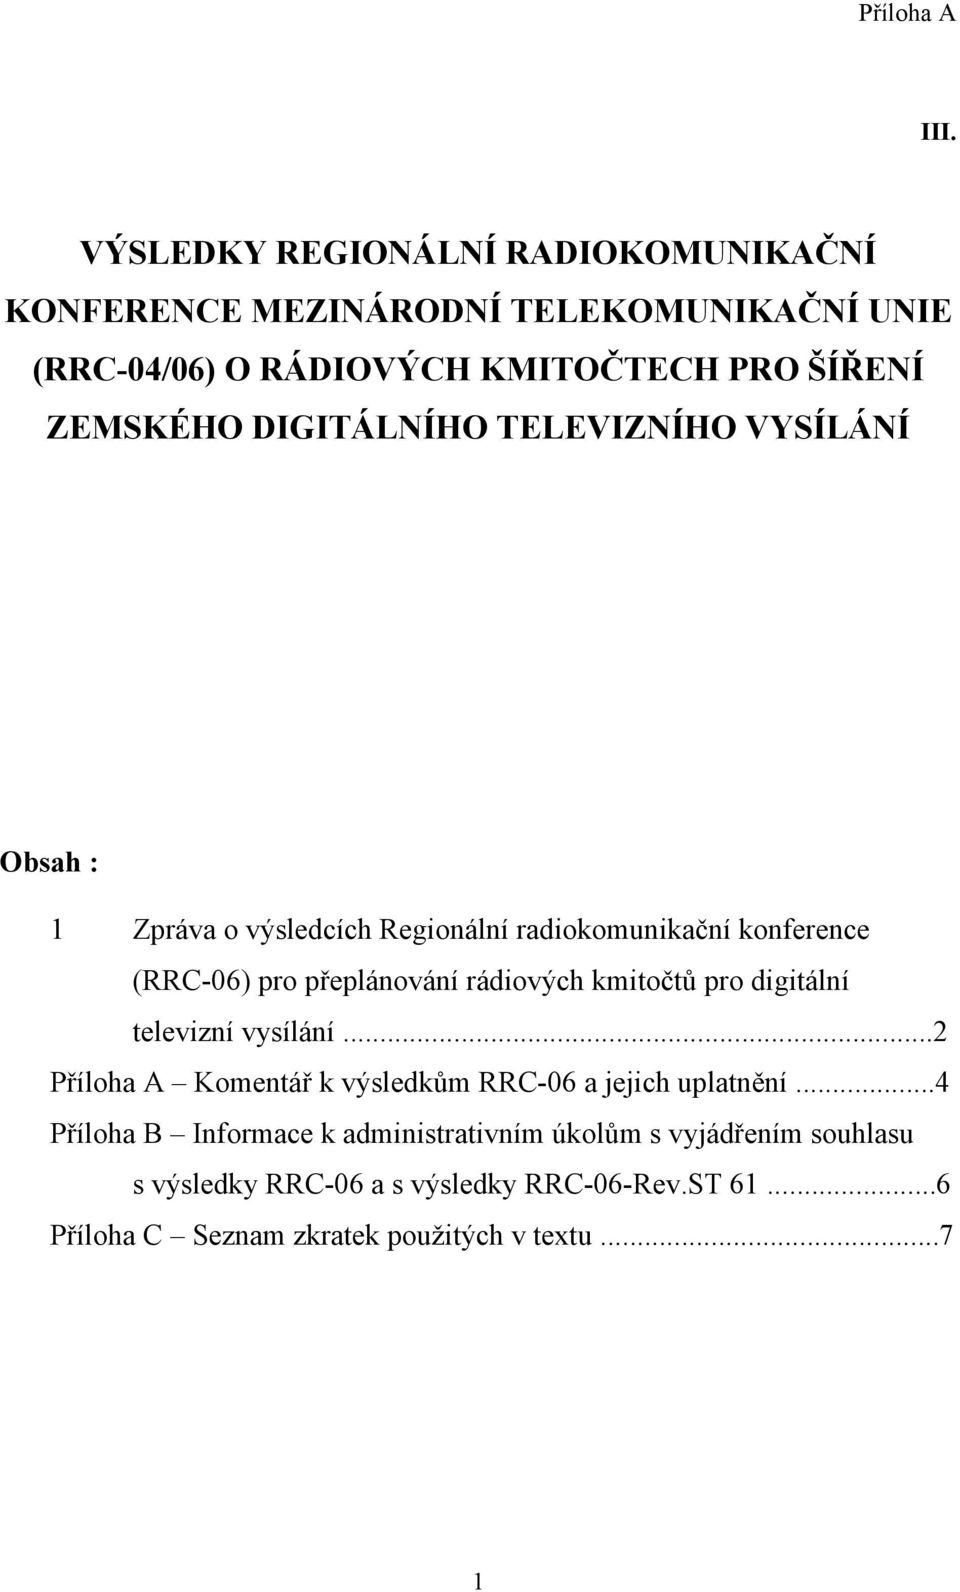 rádiových kmitočtů pro digitální televizní vysílání...2 Příloha A Komentář k výsledkům RRC-06 a jejich uplatnění.